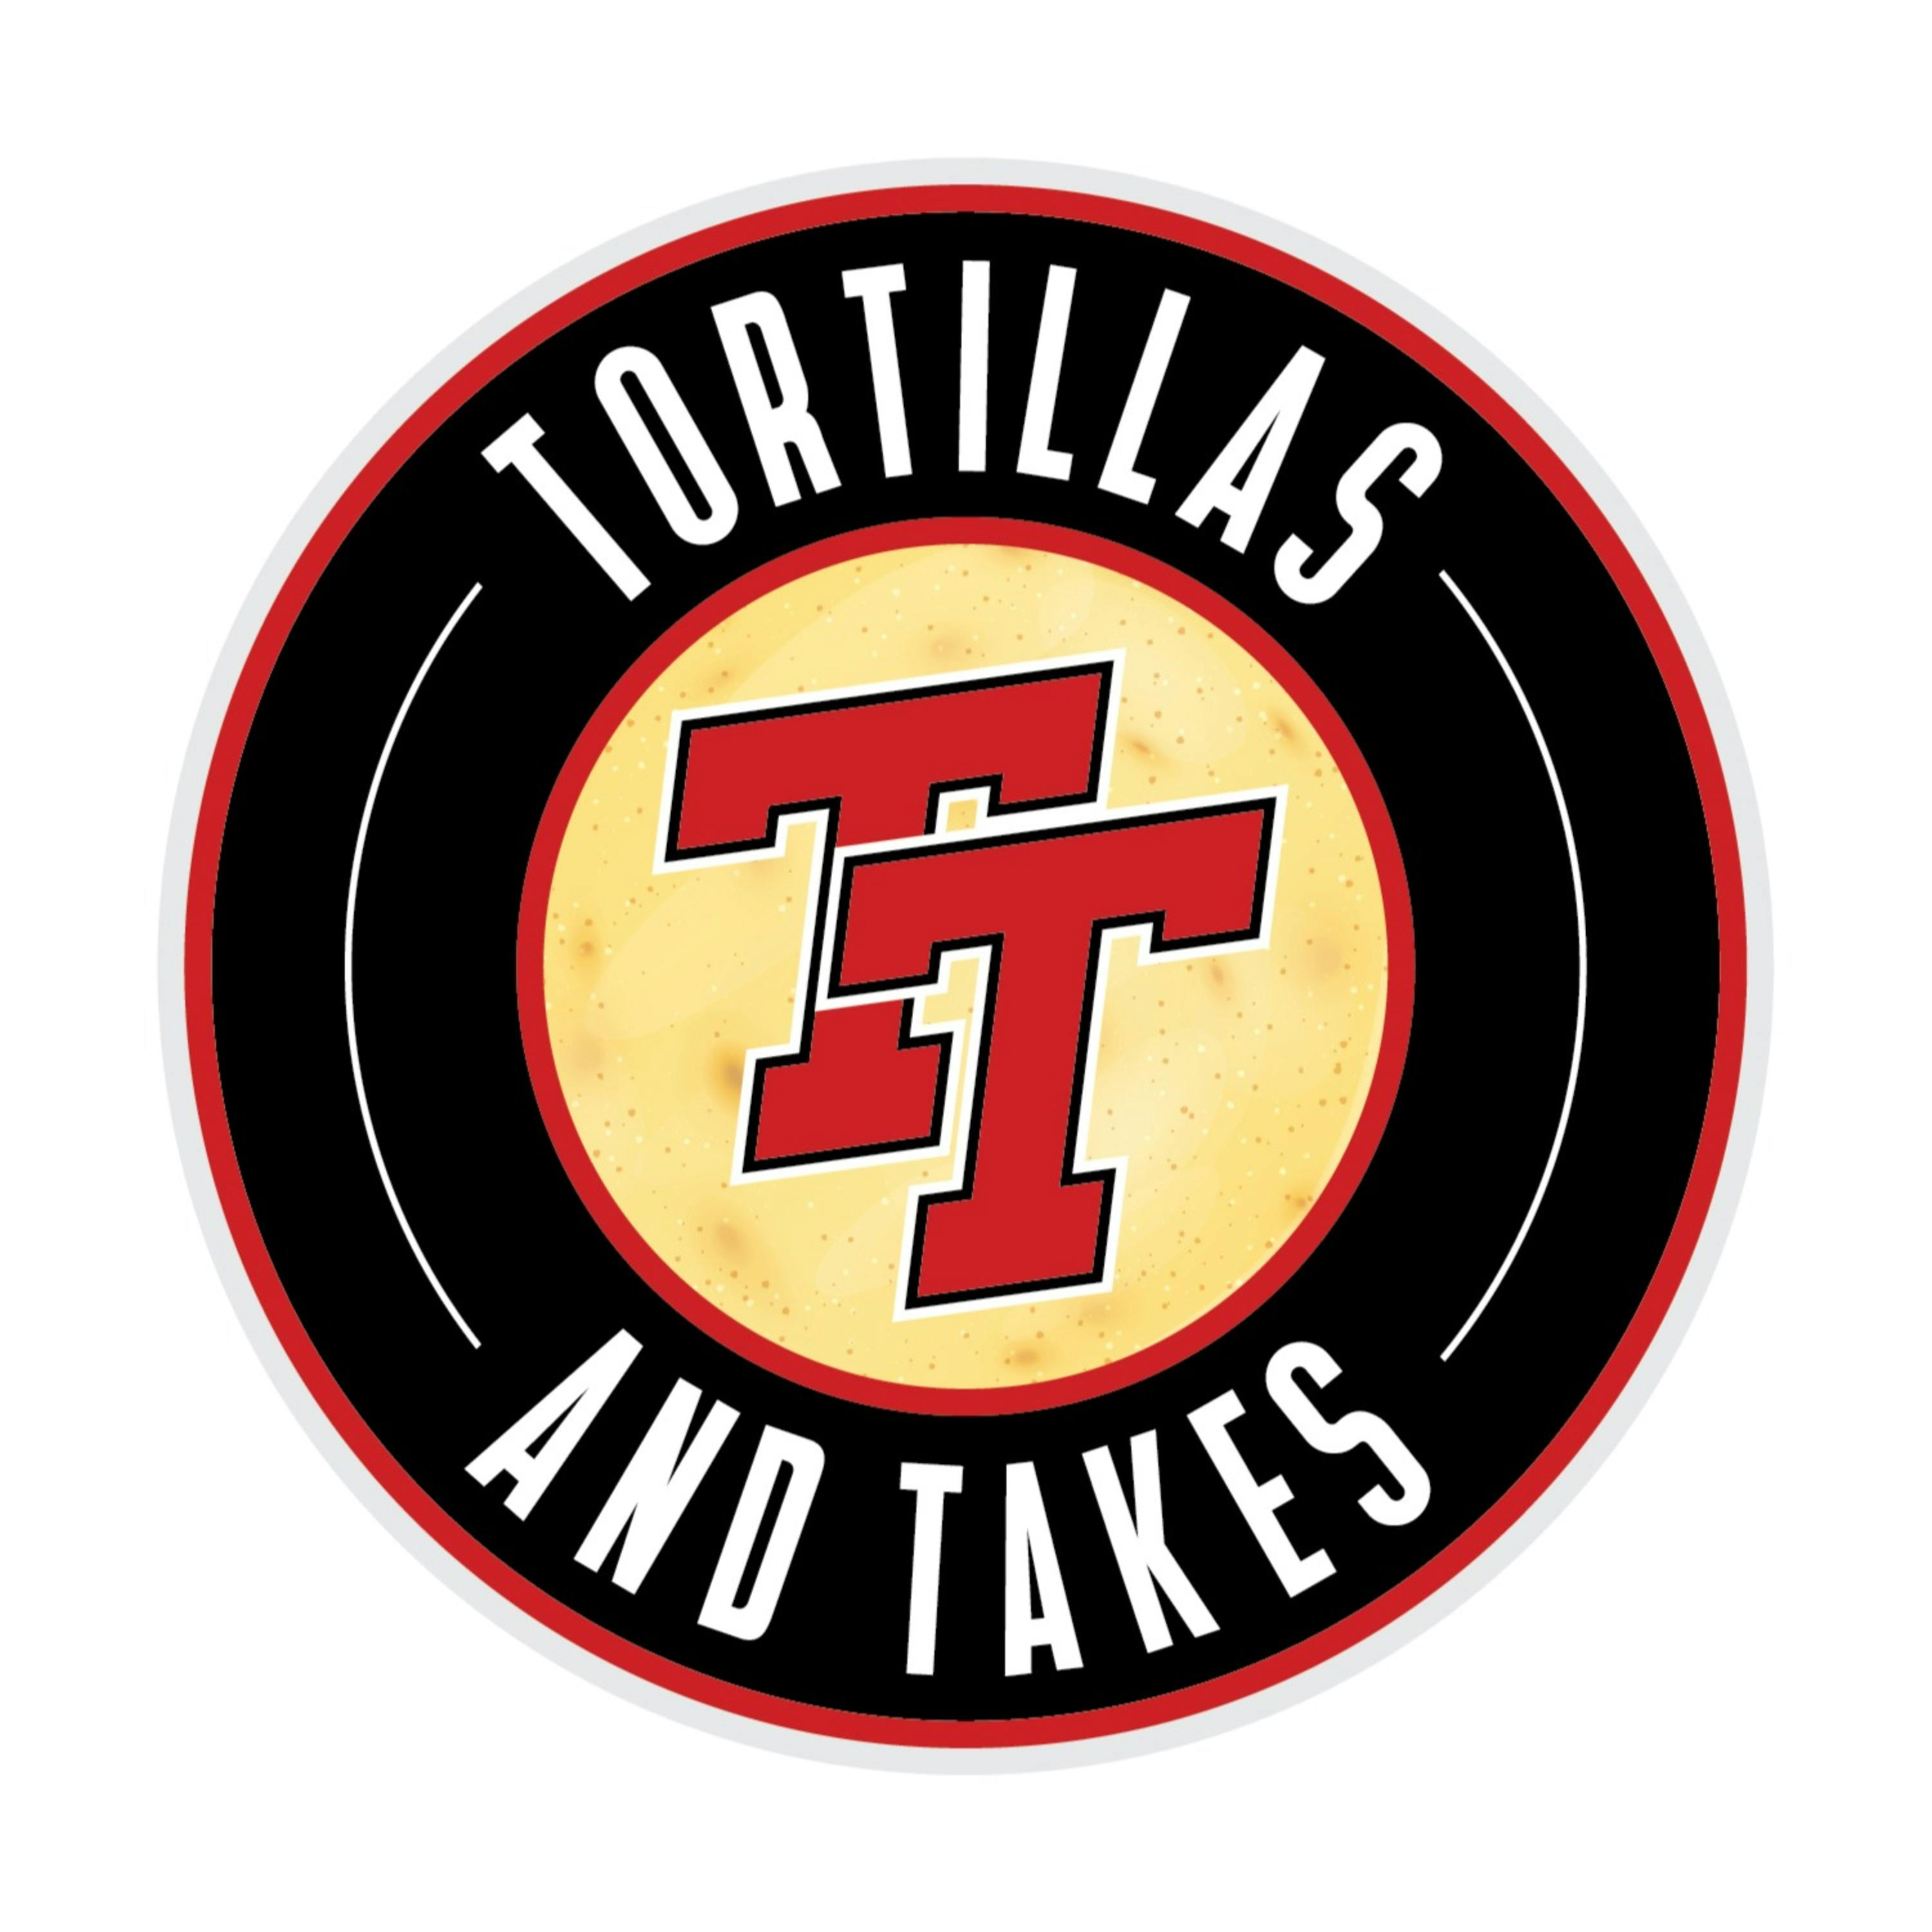 Tortillas & Topics: TBT in the LBK